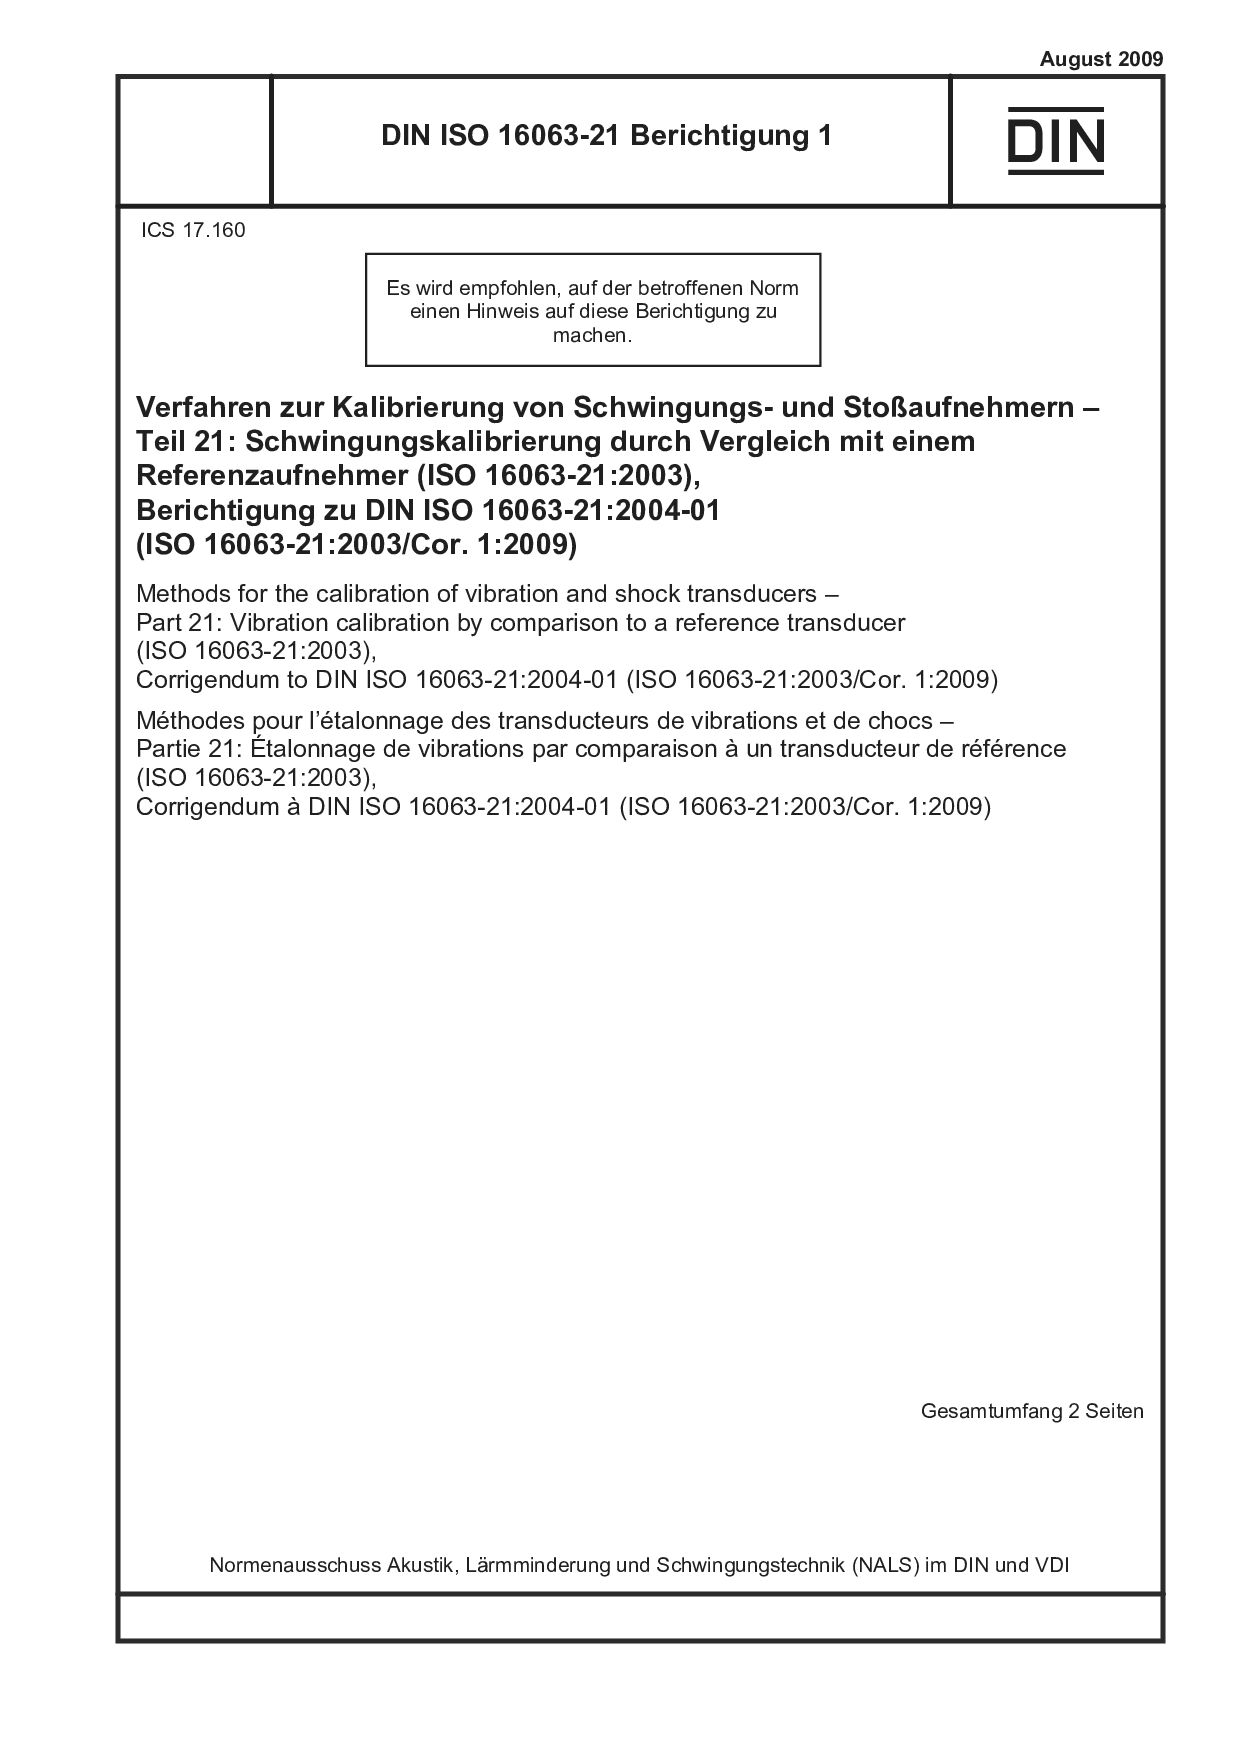 DIN ISO 16063-21 Berichtigung 1:2009